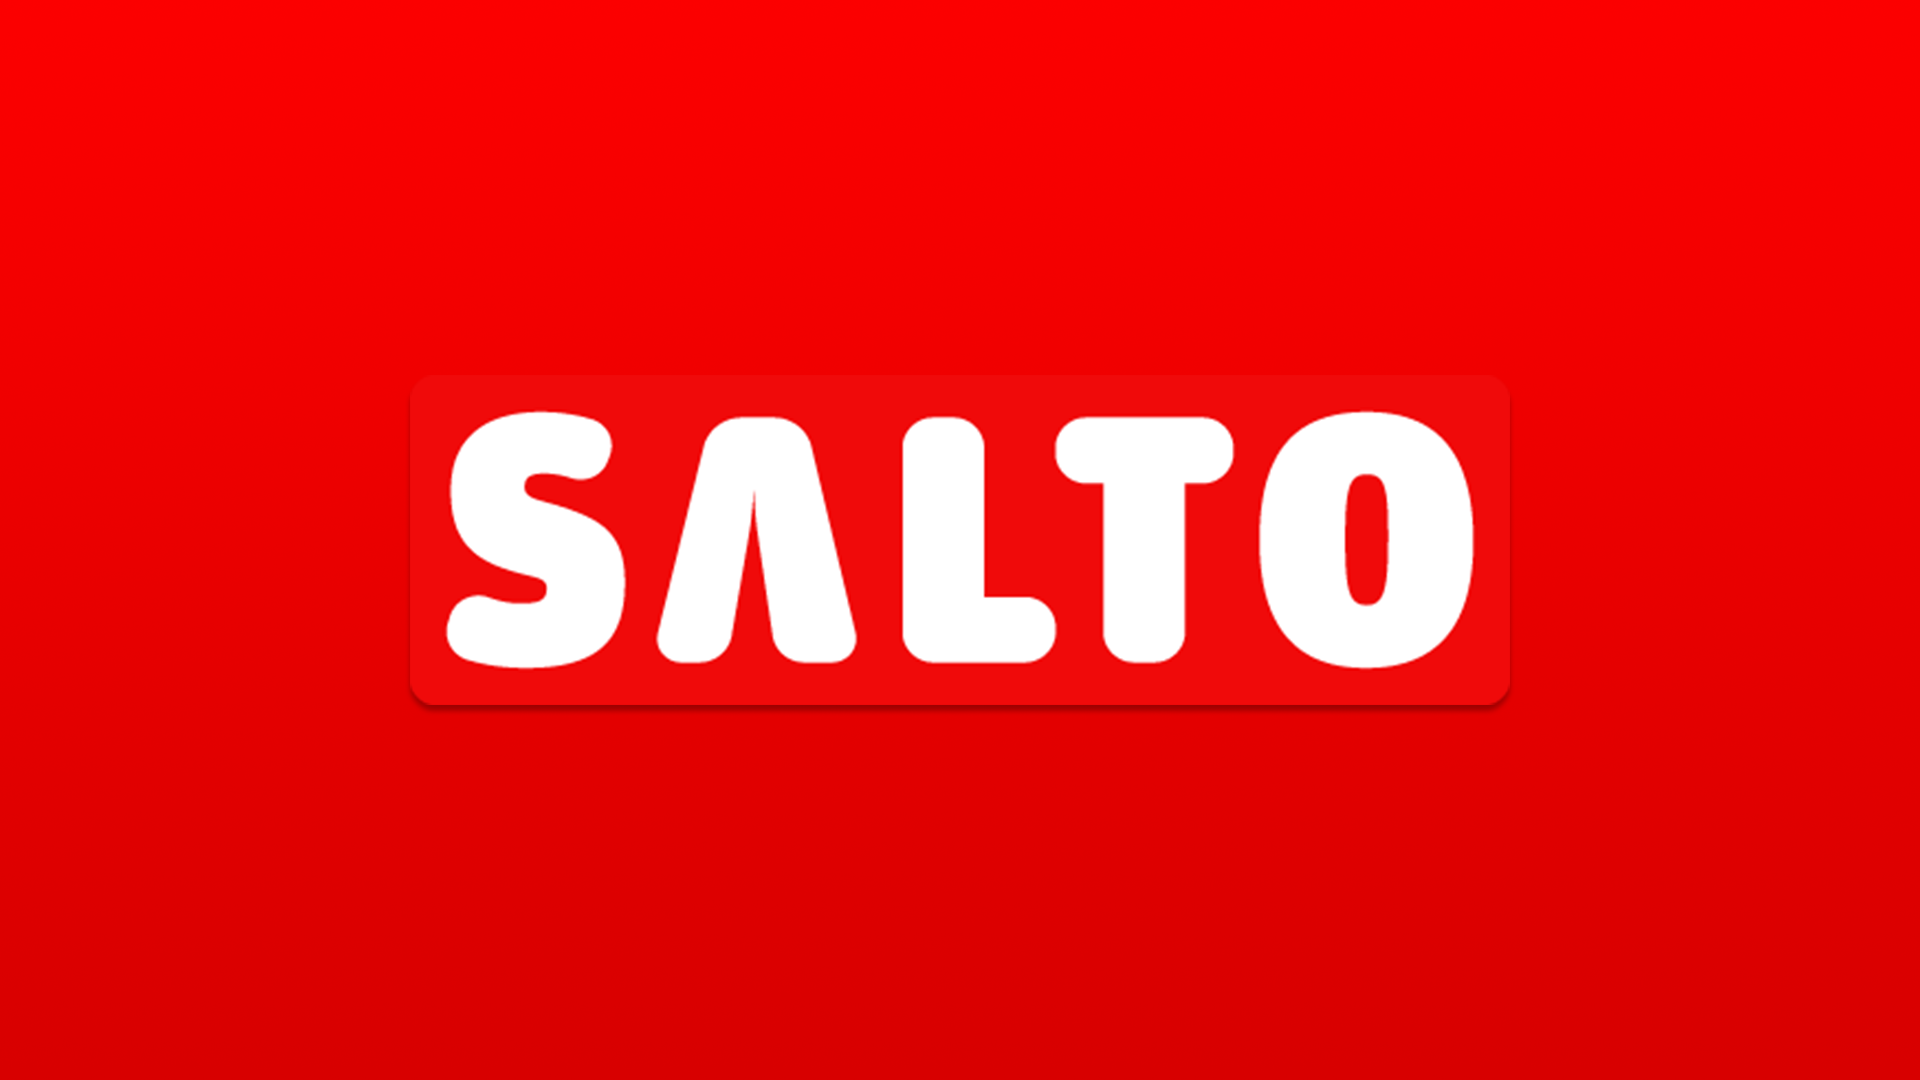 Les raisons de l'échec de Salto